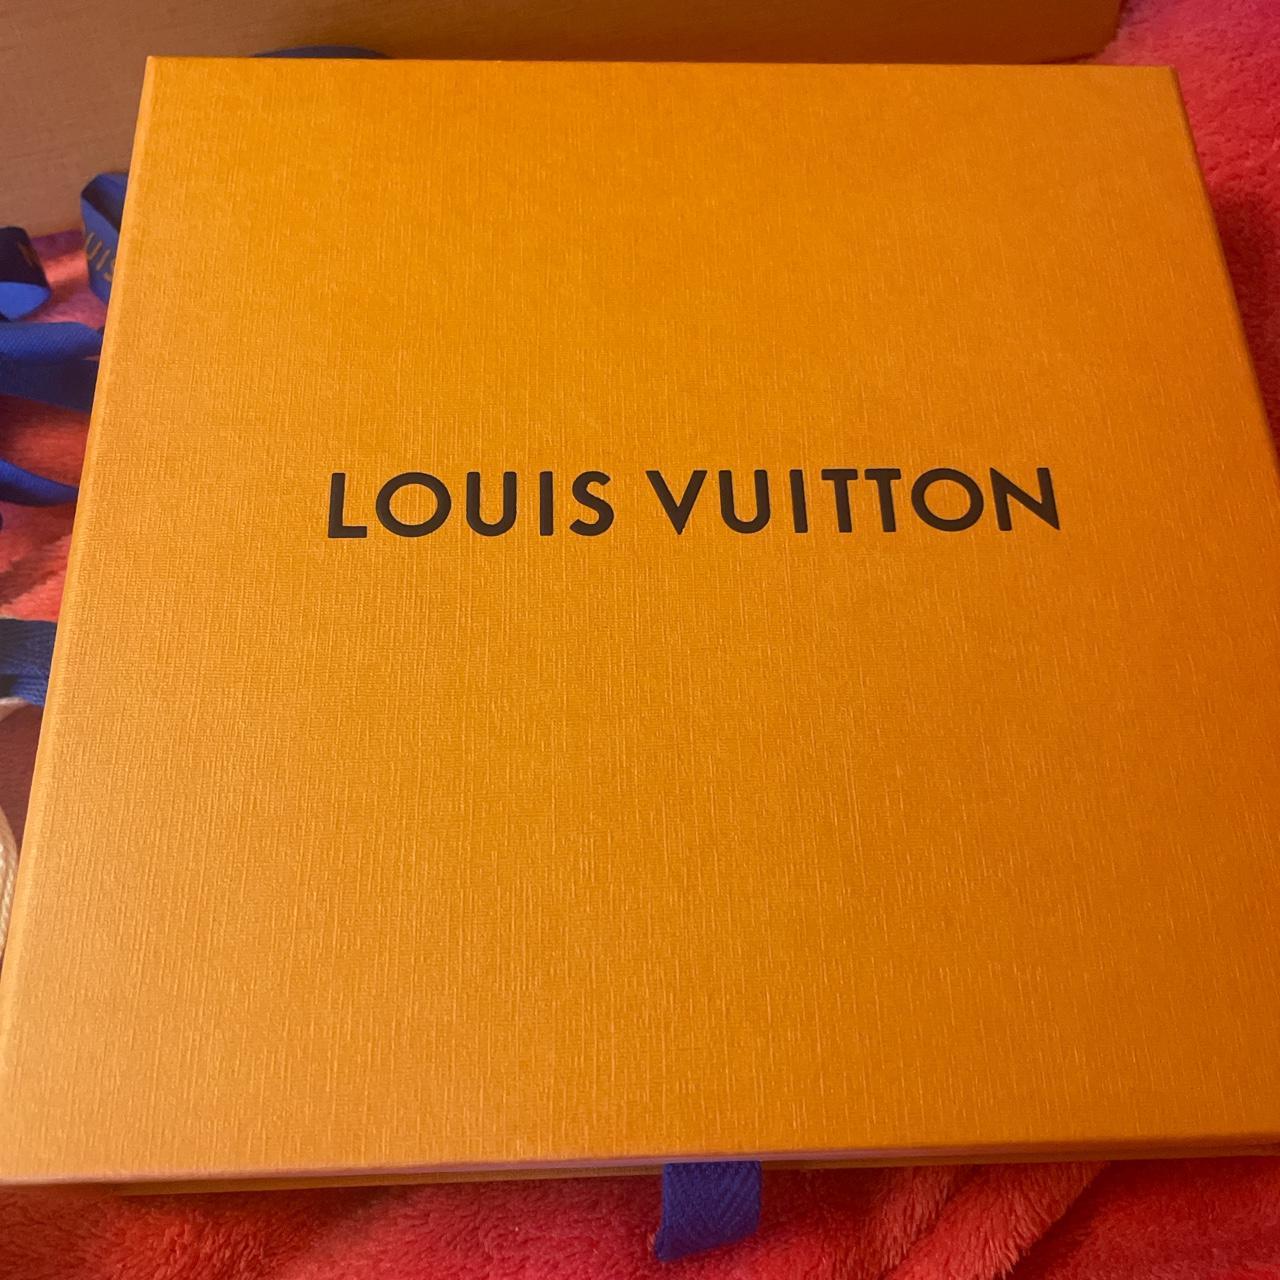 Louis Vuitton LOUIS VUITTON VIRGIL ABLOH HOLOGRAM REVERSIBLE